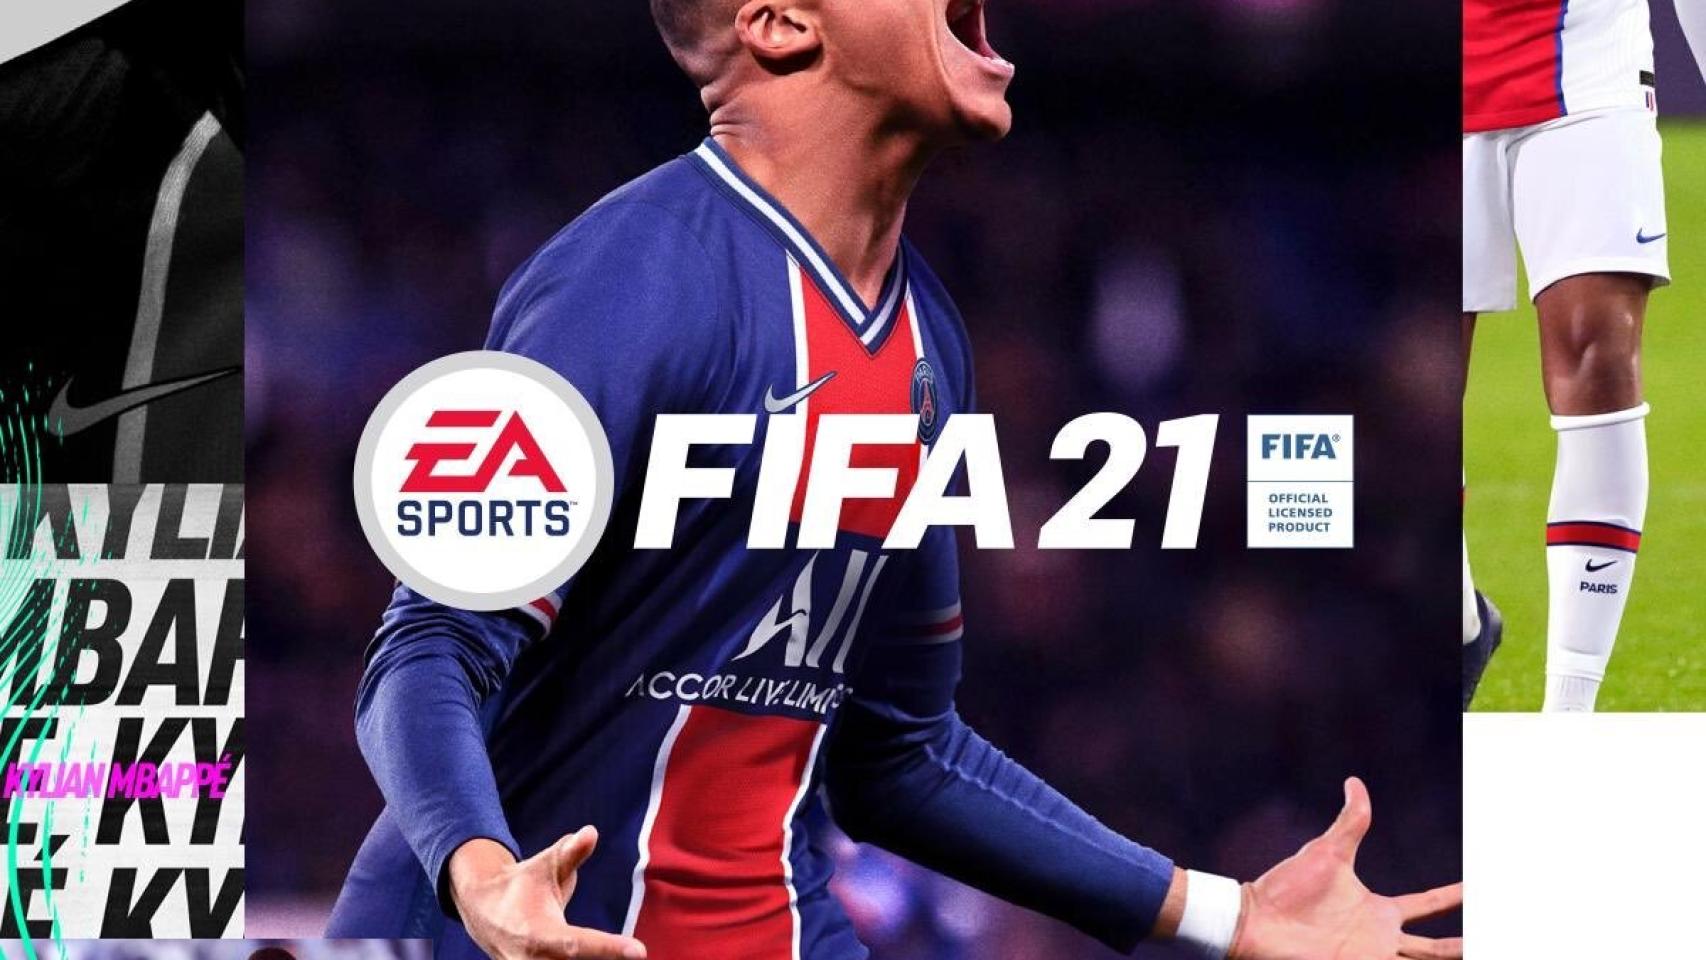 La portada del FIFA 21